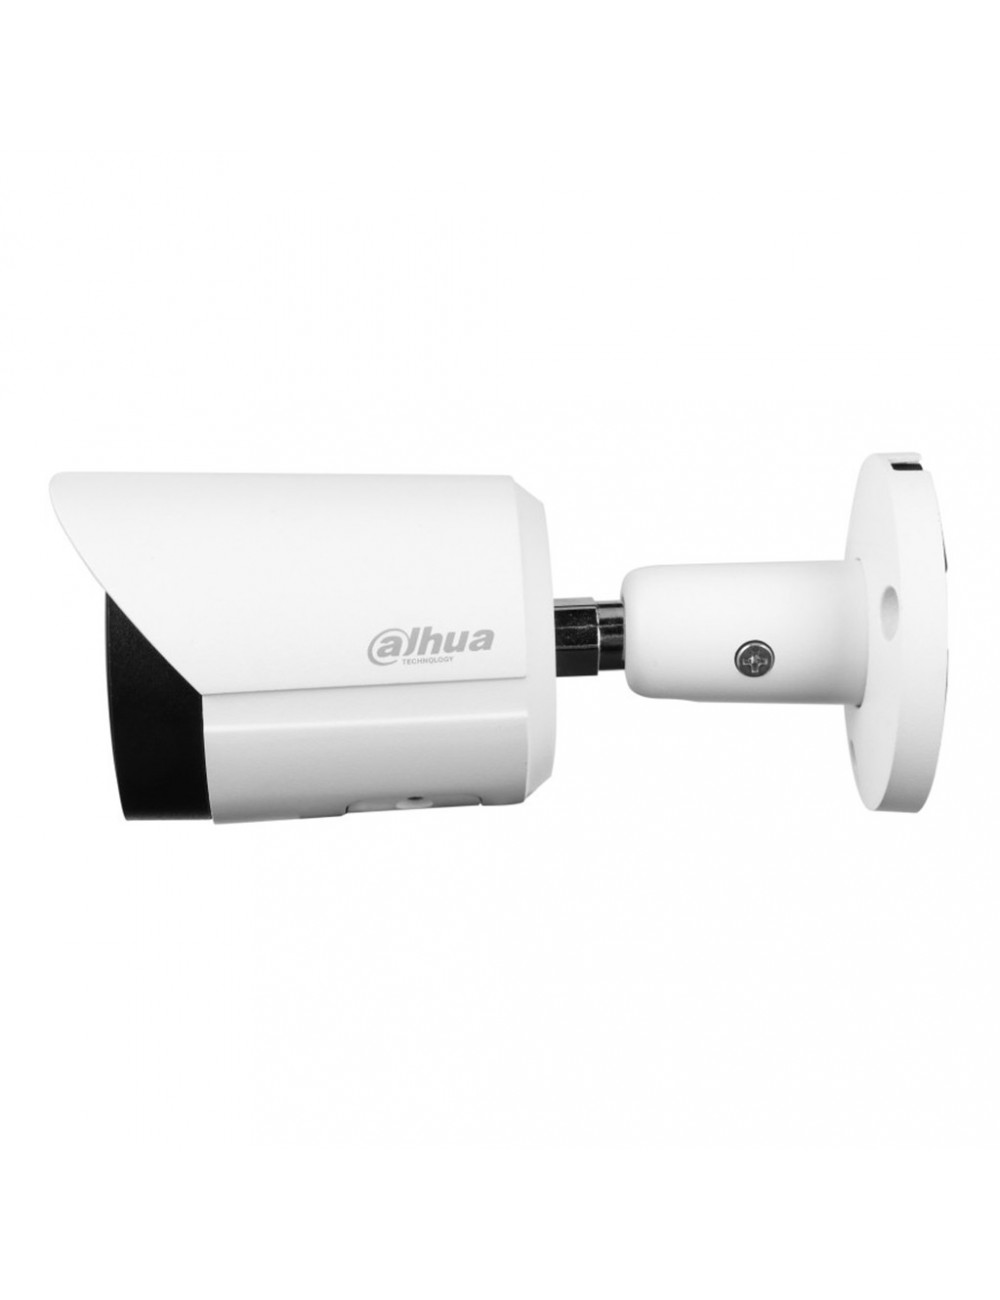 Dahua IPC-HFW2841S-S - Caméra de Surveillance 4K